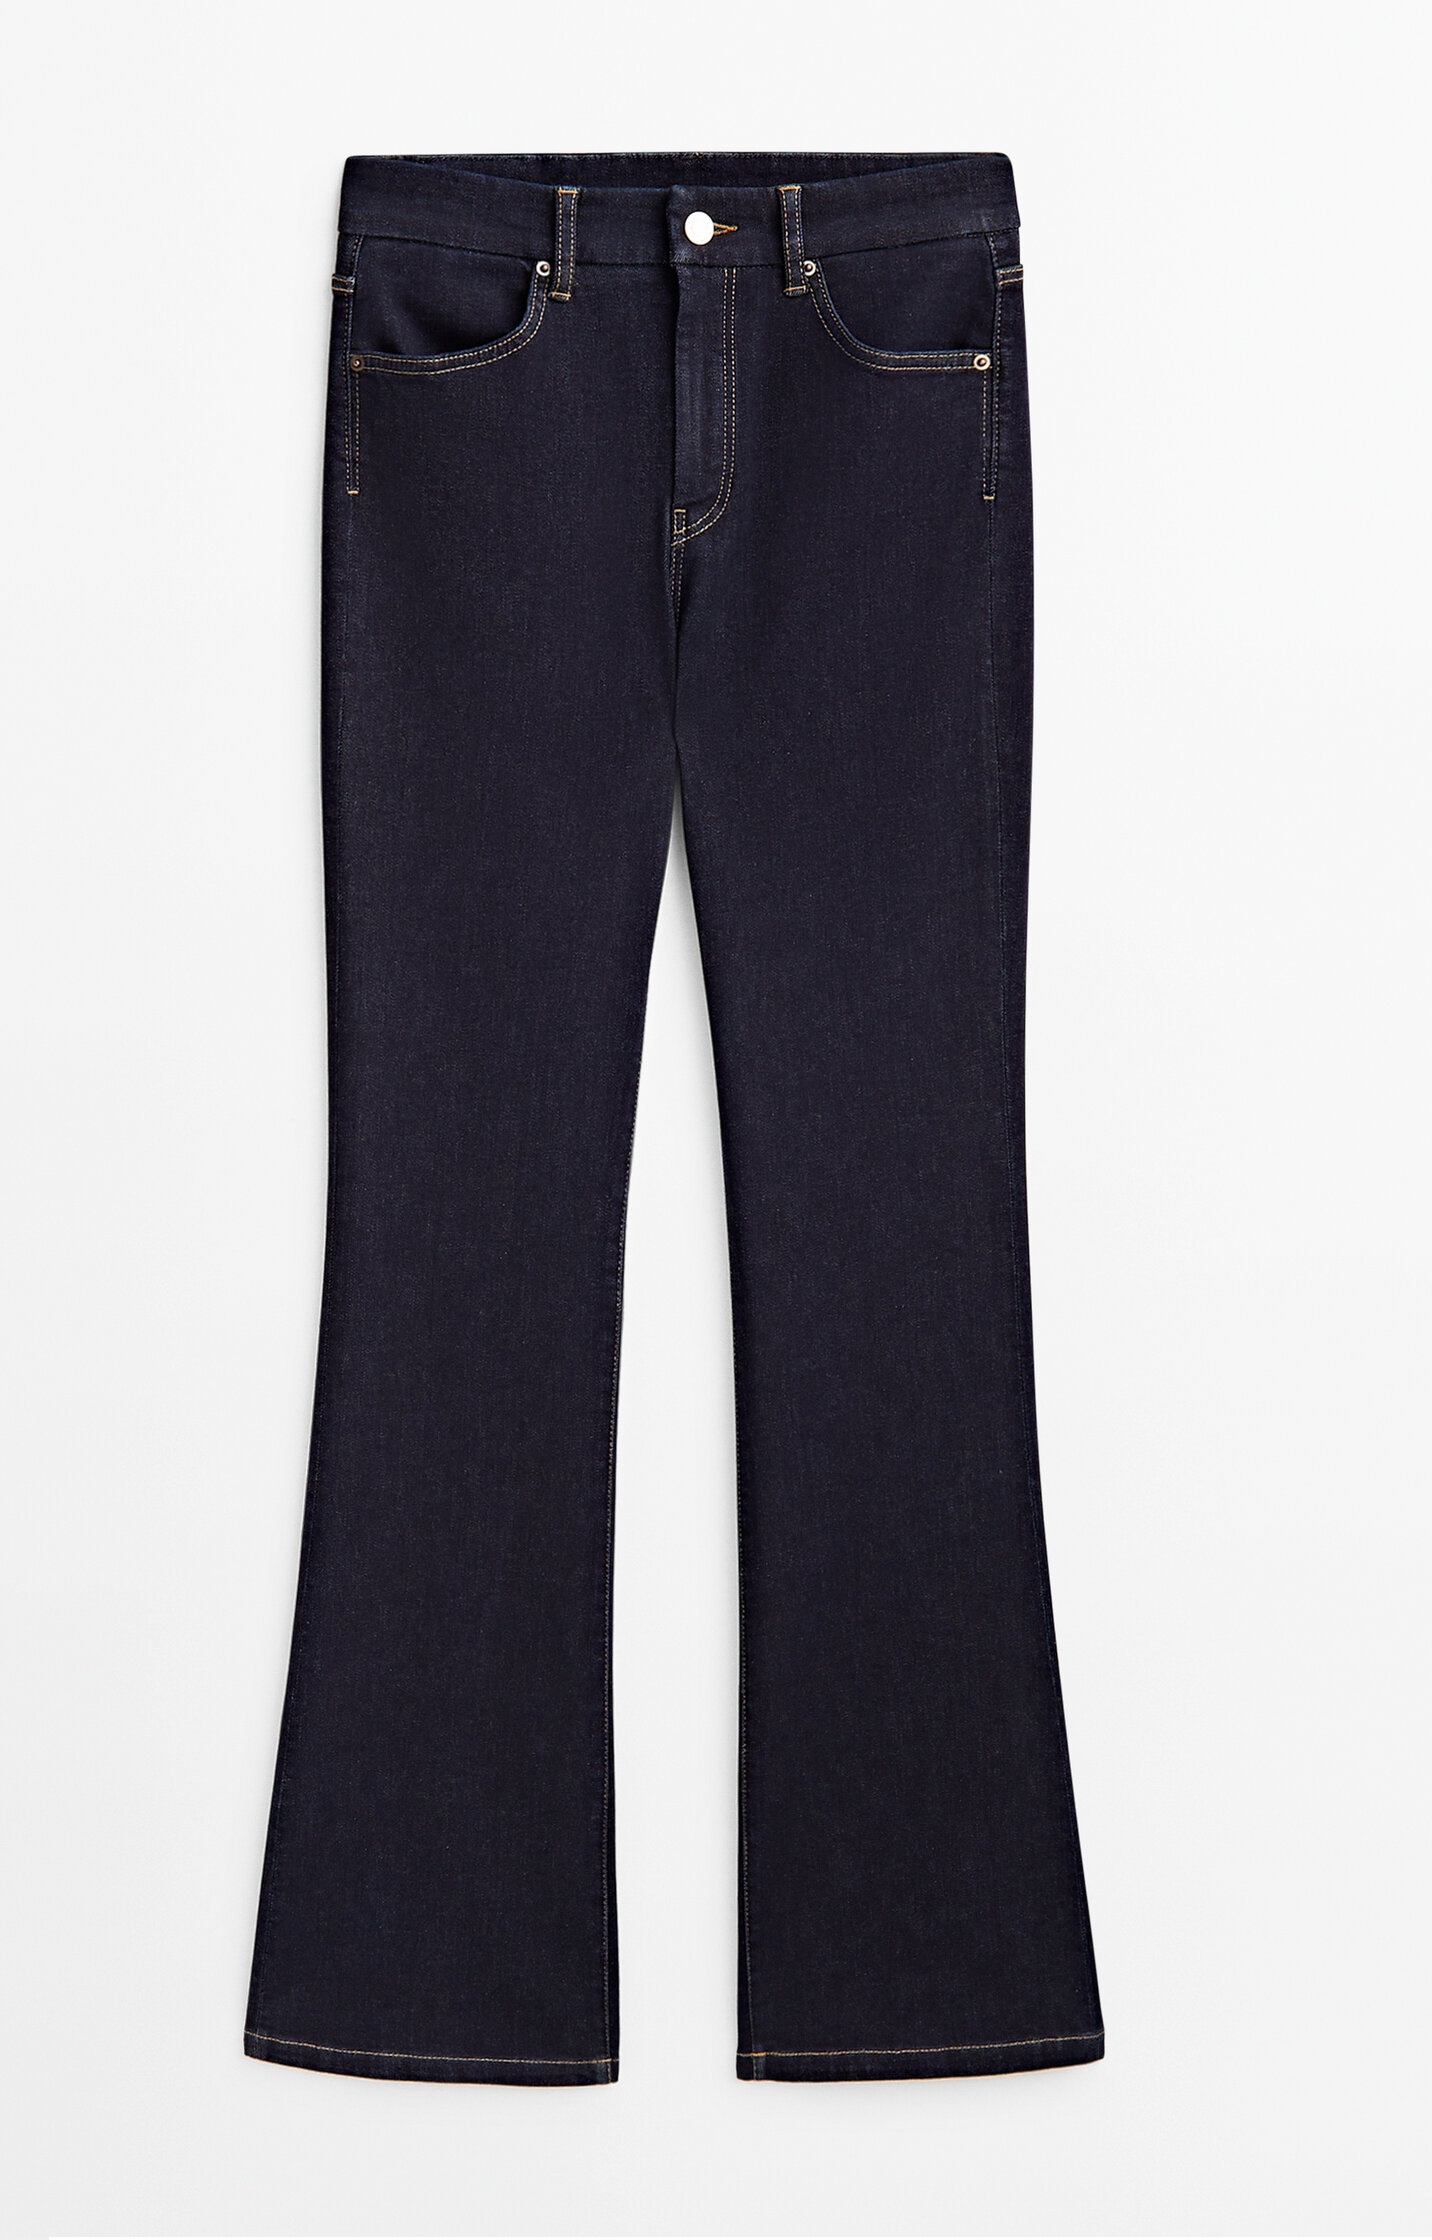 Джинсы Massimo Dutti Skinny Flare Fit High-waist, темно-синий джинсы скинни с высокой посадкой 26 30 синий